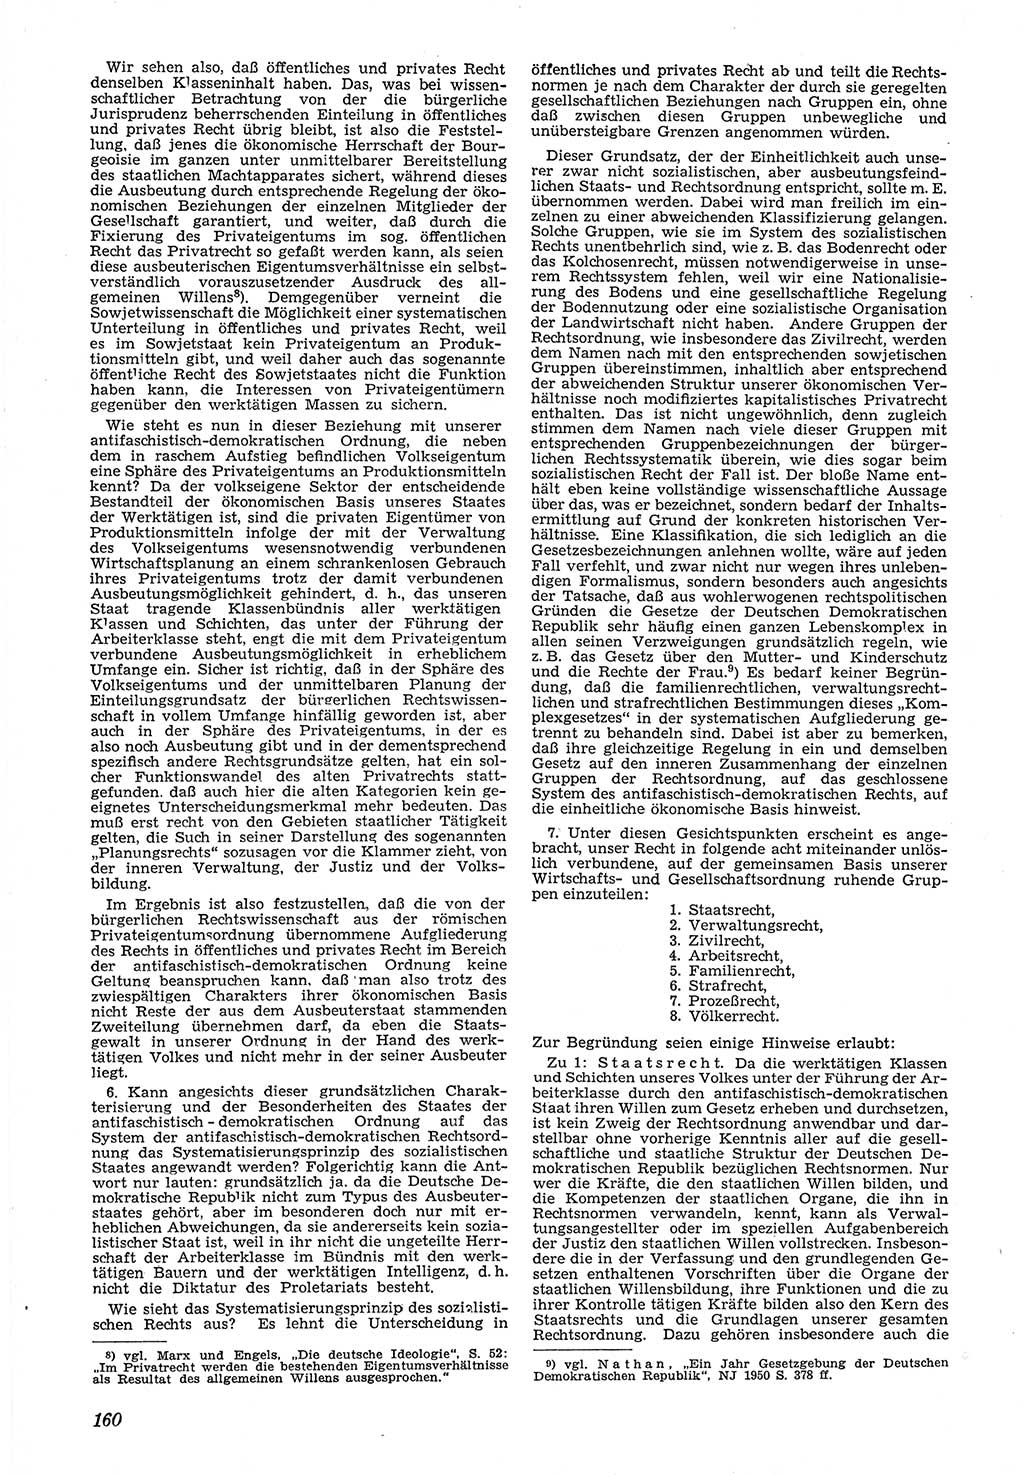 Neue Justiz (NJ), Zeitschrift für Recht und Rechtswissenschaft [Deutsche Demokratische Republik (DDR)], 5. Jahrgang 1951, Seite 160 (NJ DDR 1951, S. 160)